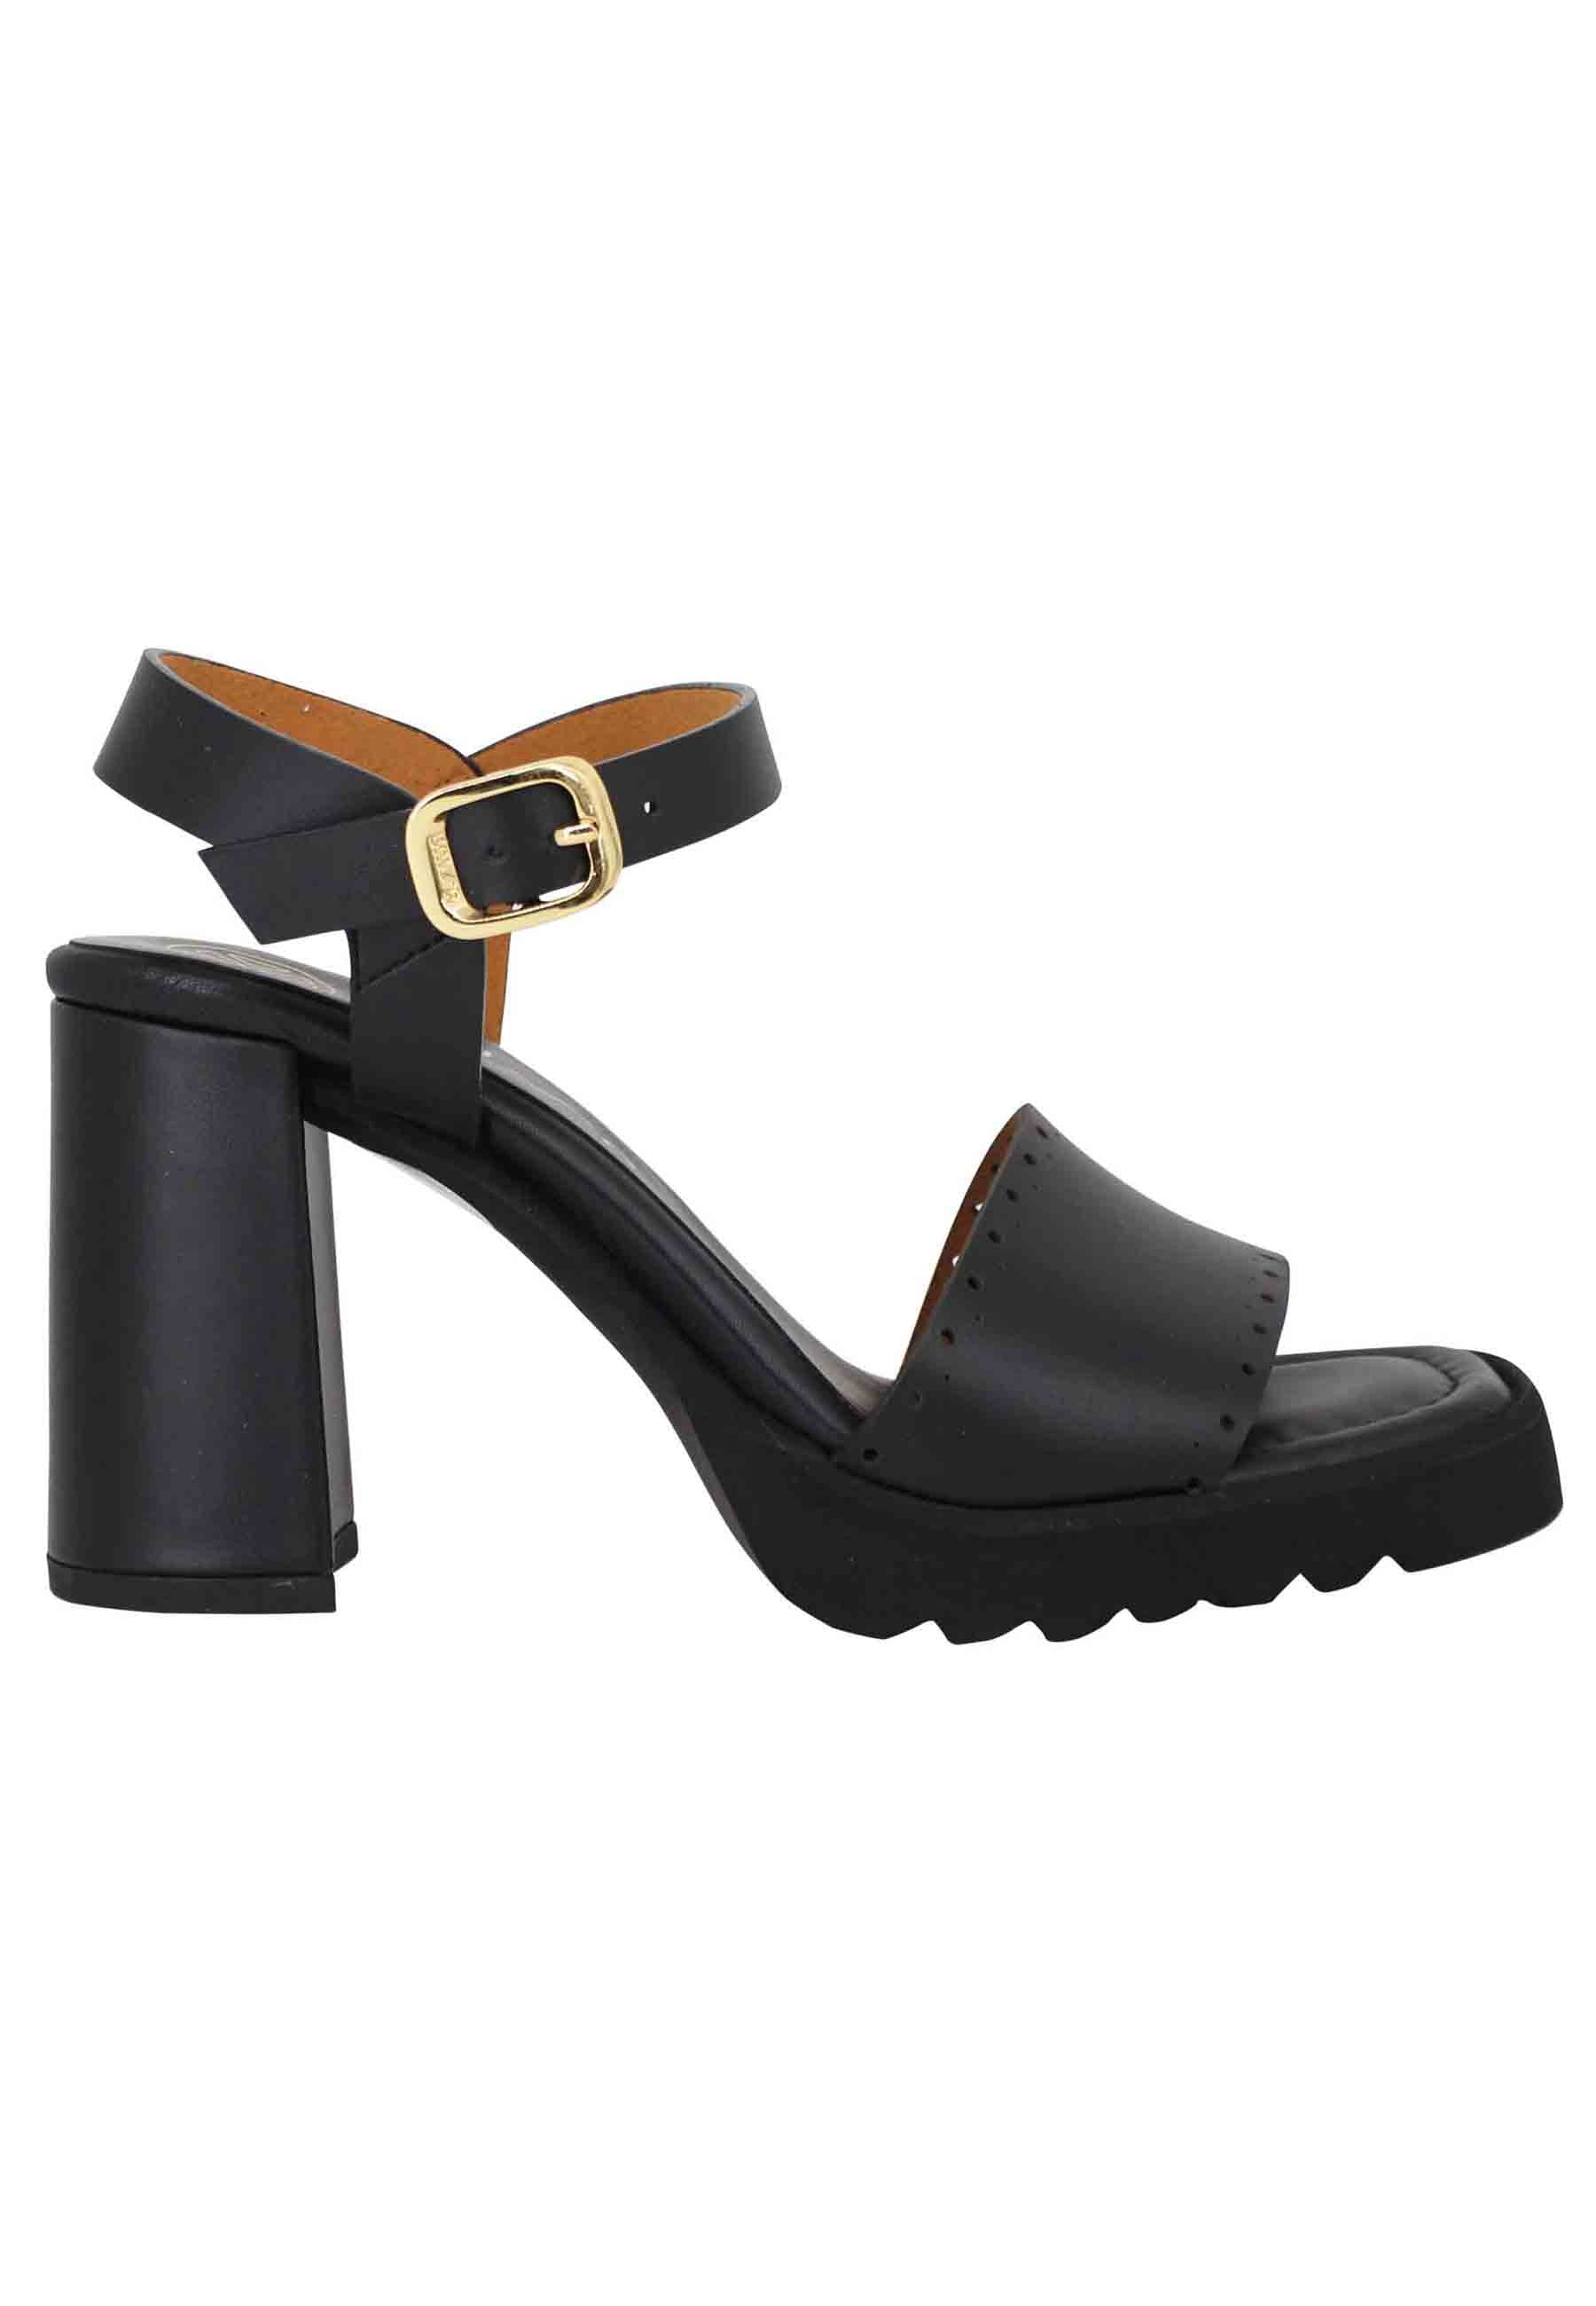 Sandales pour femmes en cuir noir à talon haut et plateforme en caoutchouc